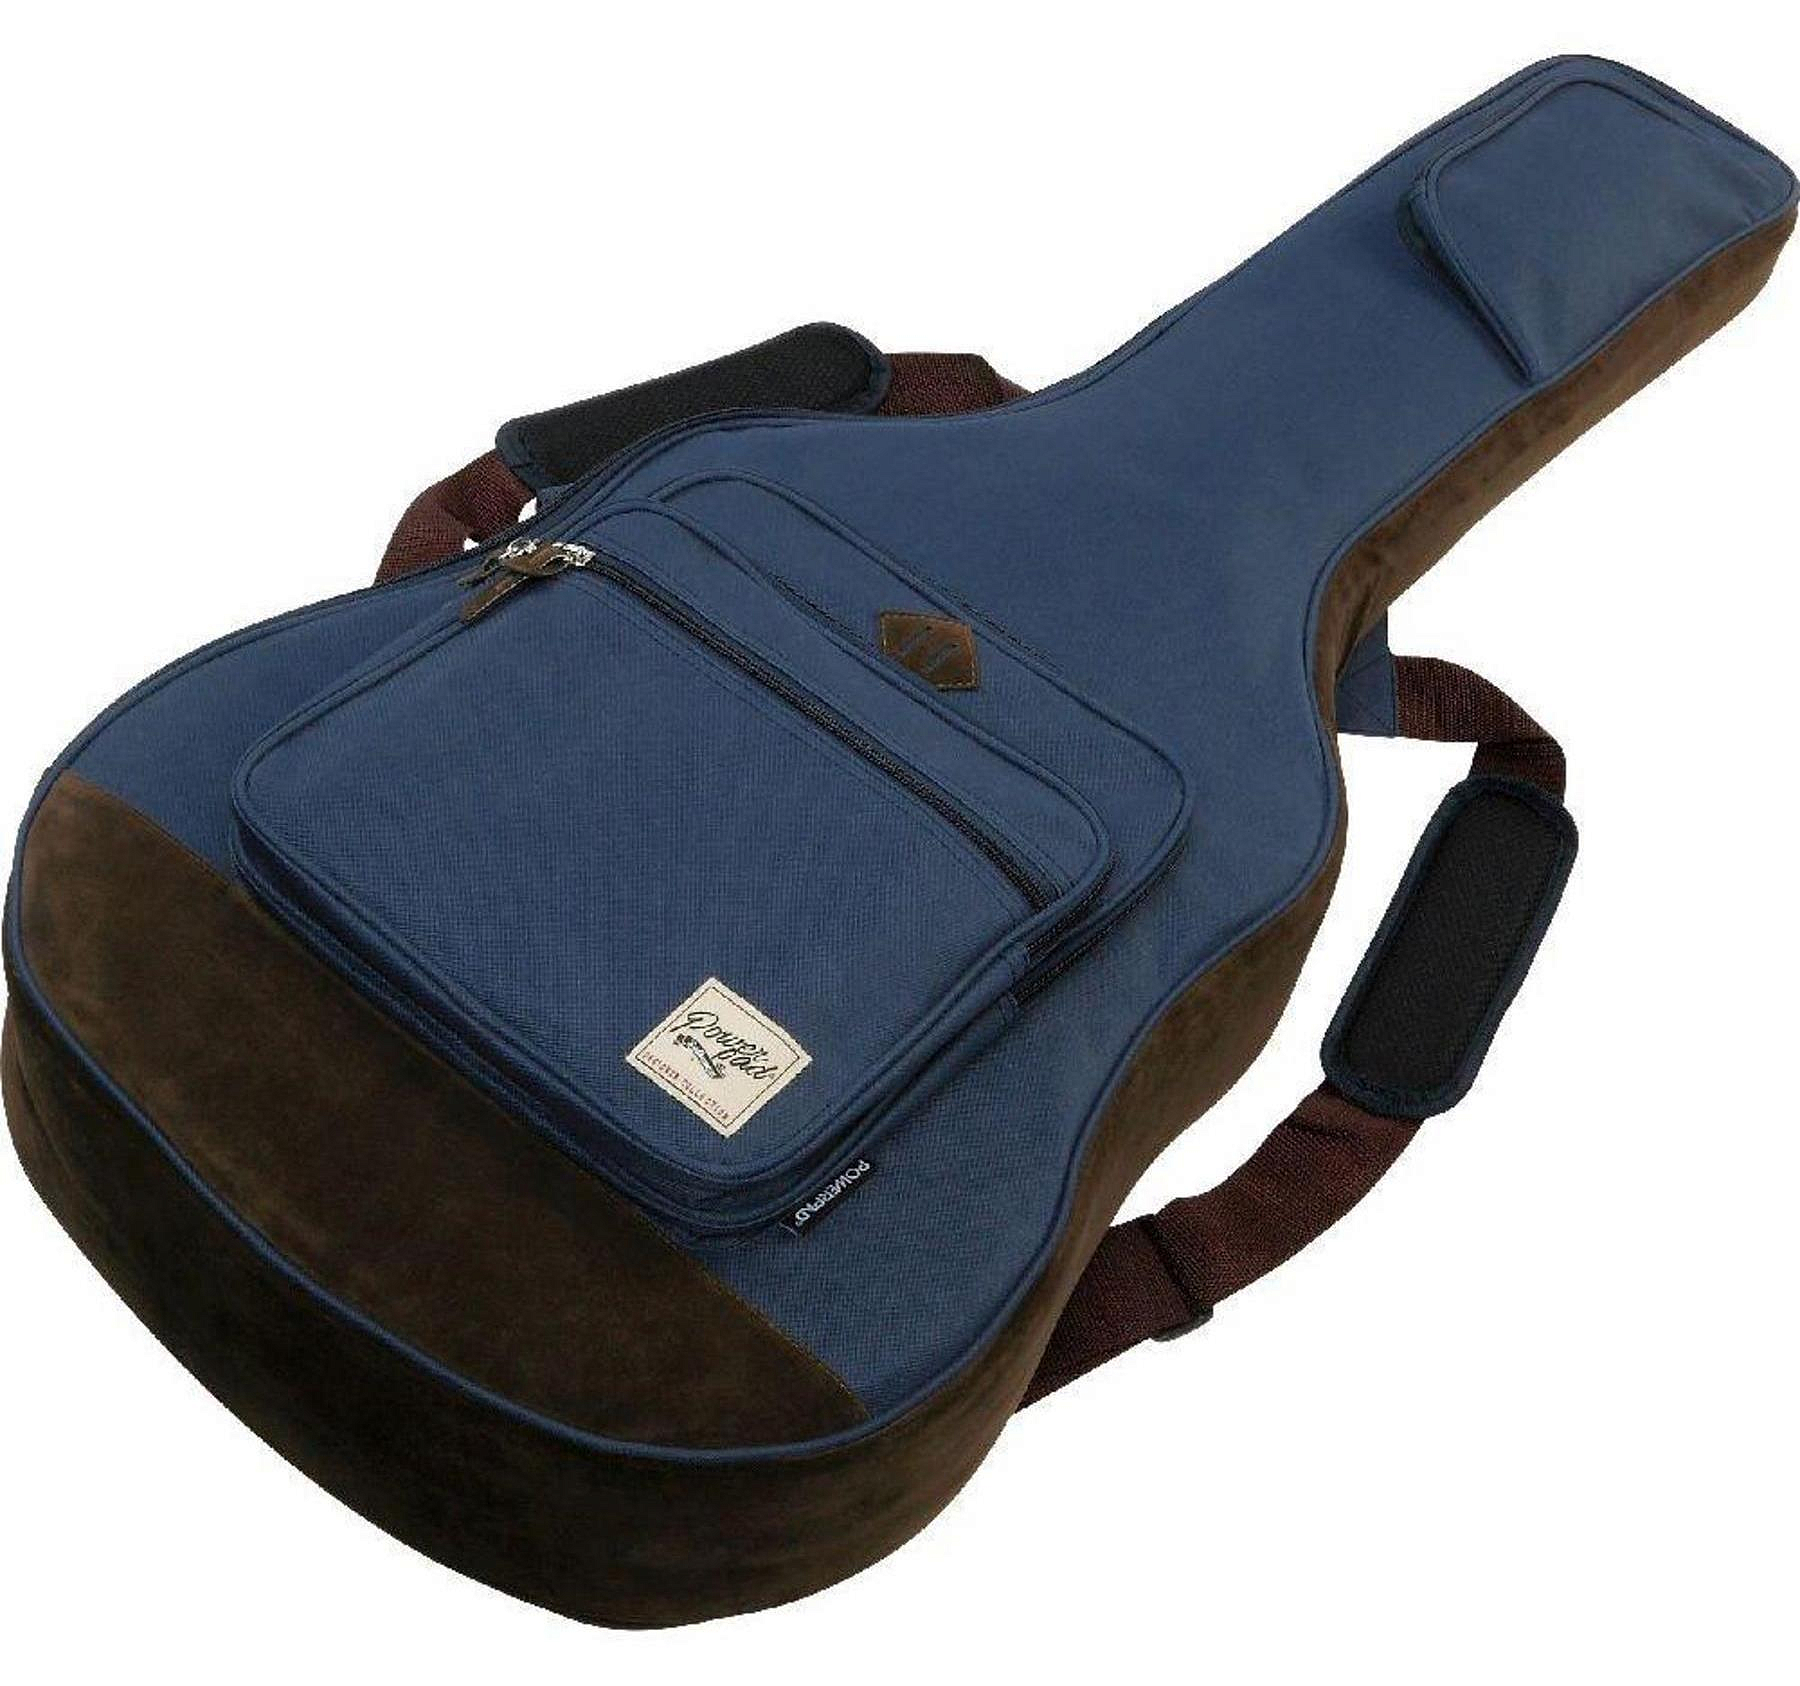 Ibanez IAB541-NB Powerpad® Designer Collection Acoustic Guitar Bag чехол для акустической гитары | Продукция IBANEZ